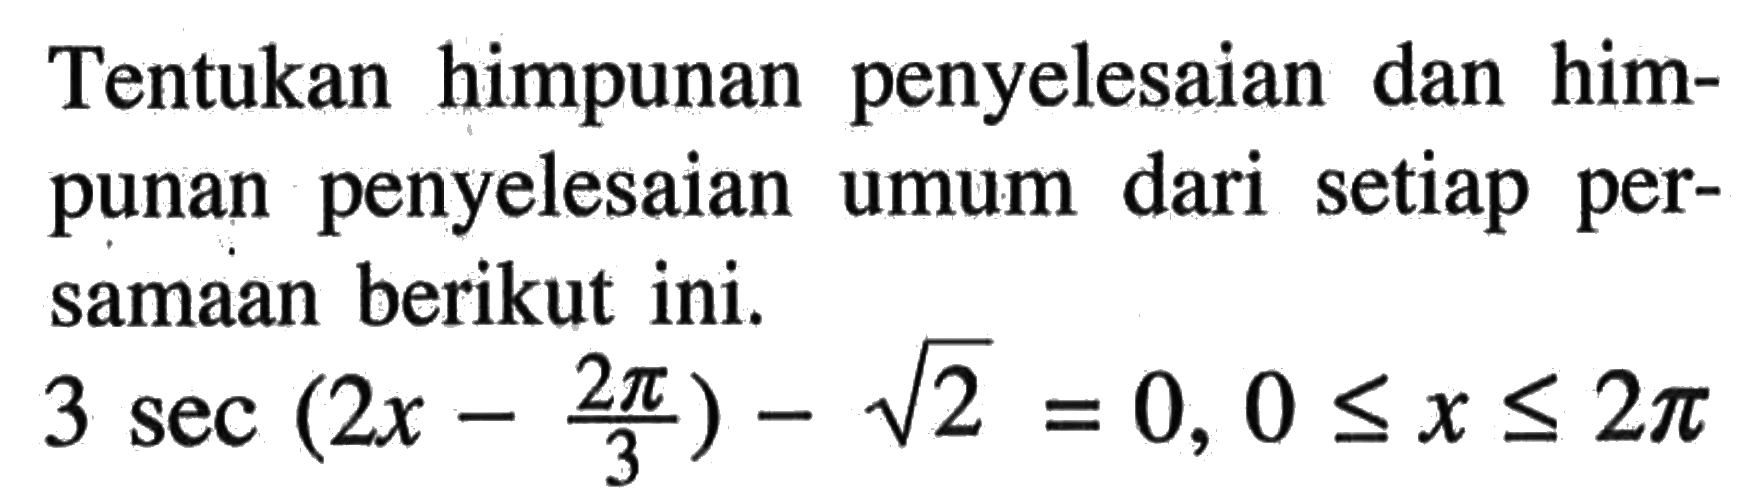 Tentukan himpunan penyelesaian dan himpunan penyelesaian umum dari setiap persamaan berikut ini. 3 sec (2x-2pi/3) - akar(2) = 0, 0<=x<=2pi